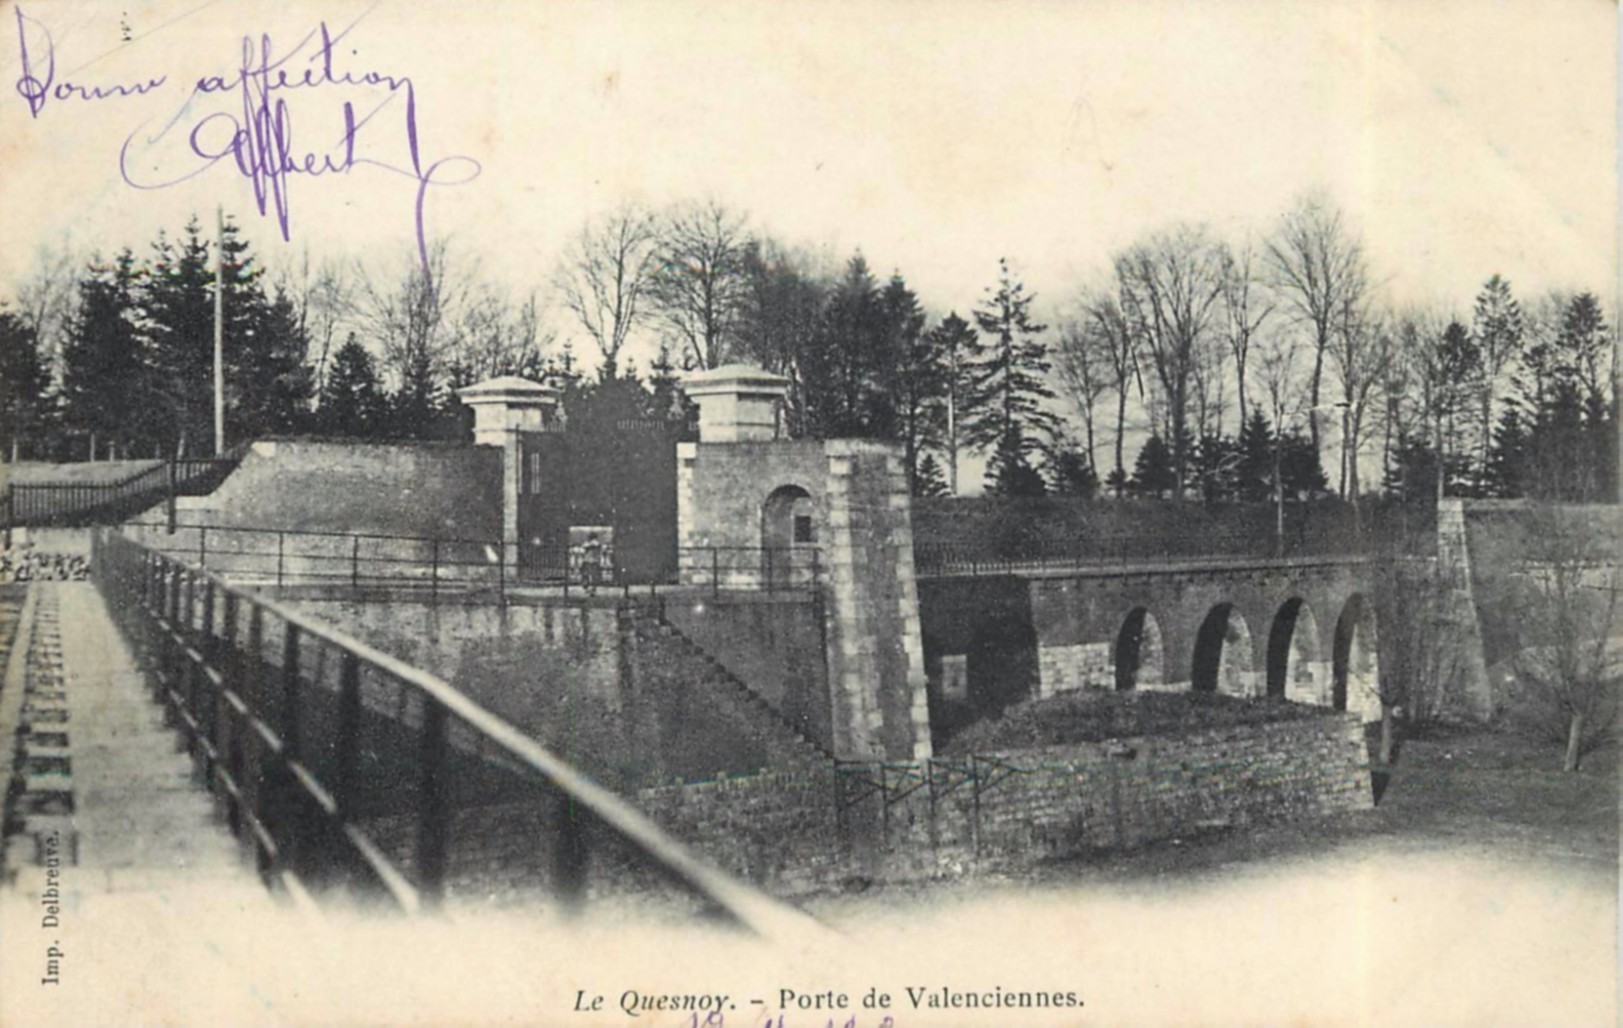 Le Quesnoy, ses remparts. La porte de Valenciennes